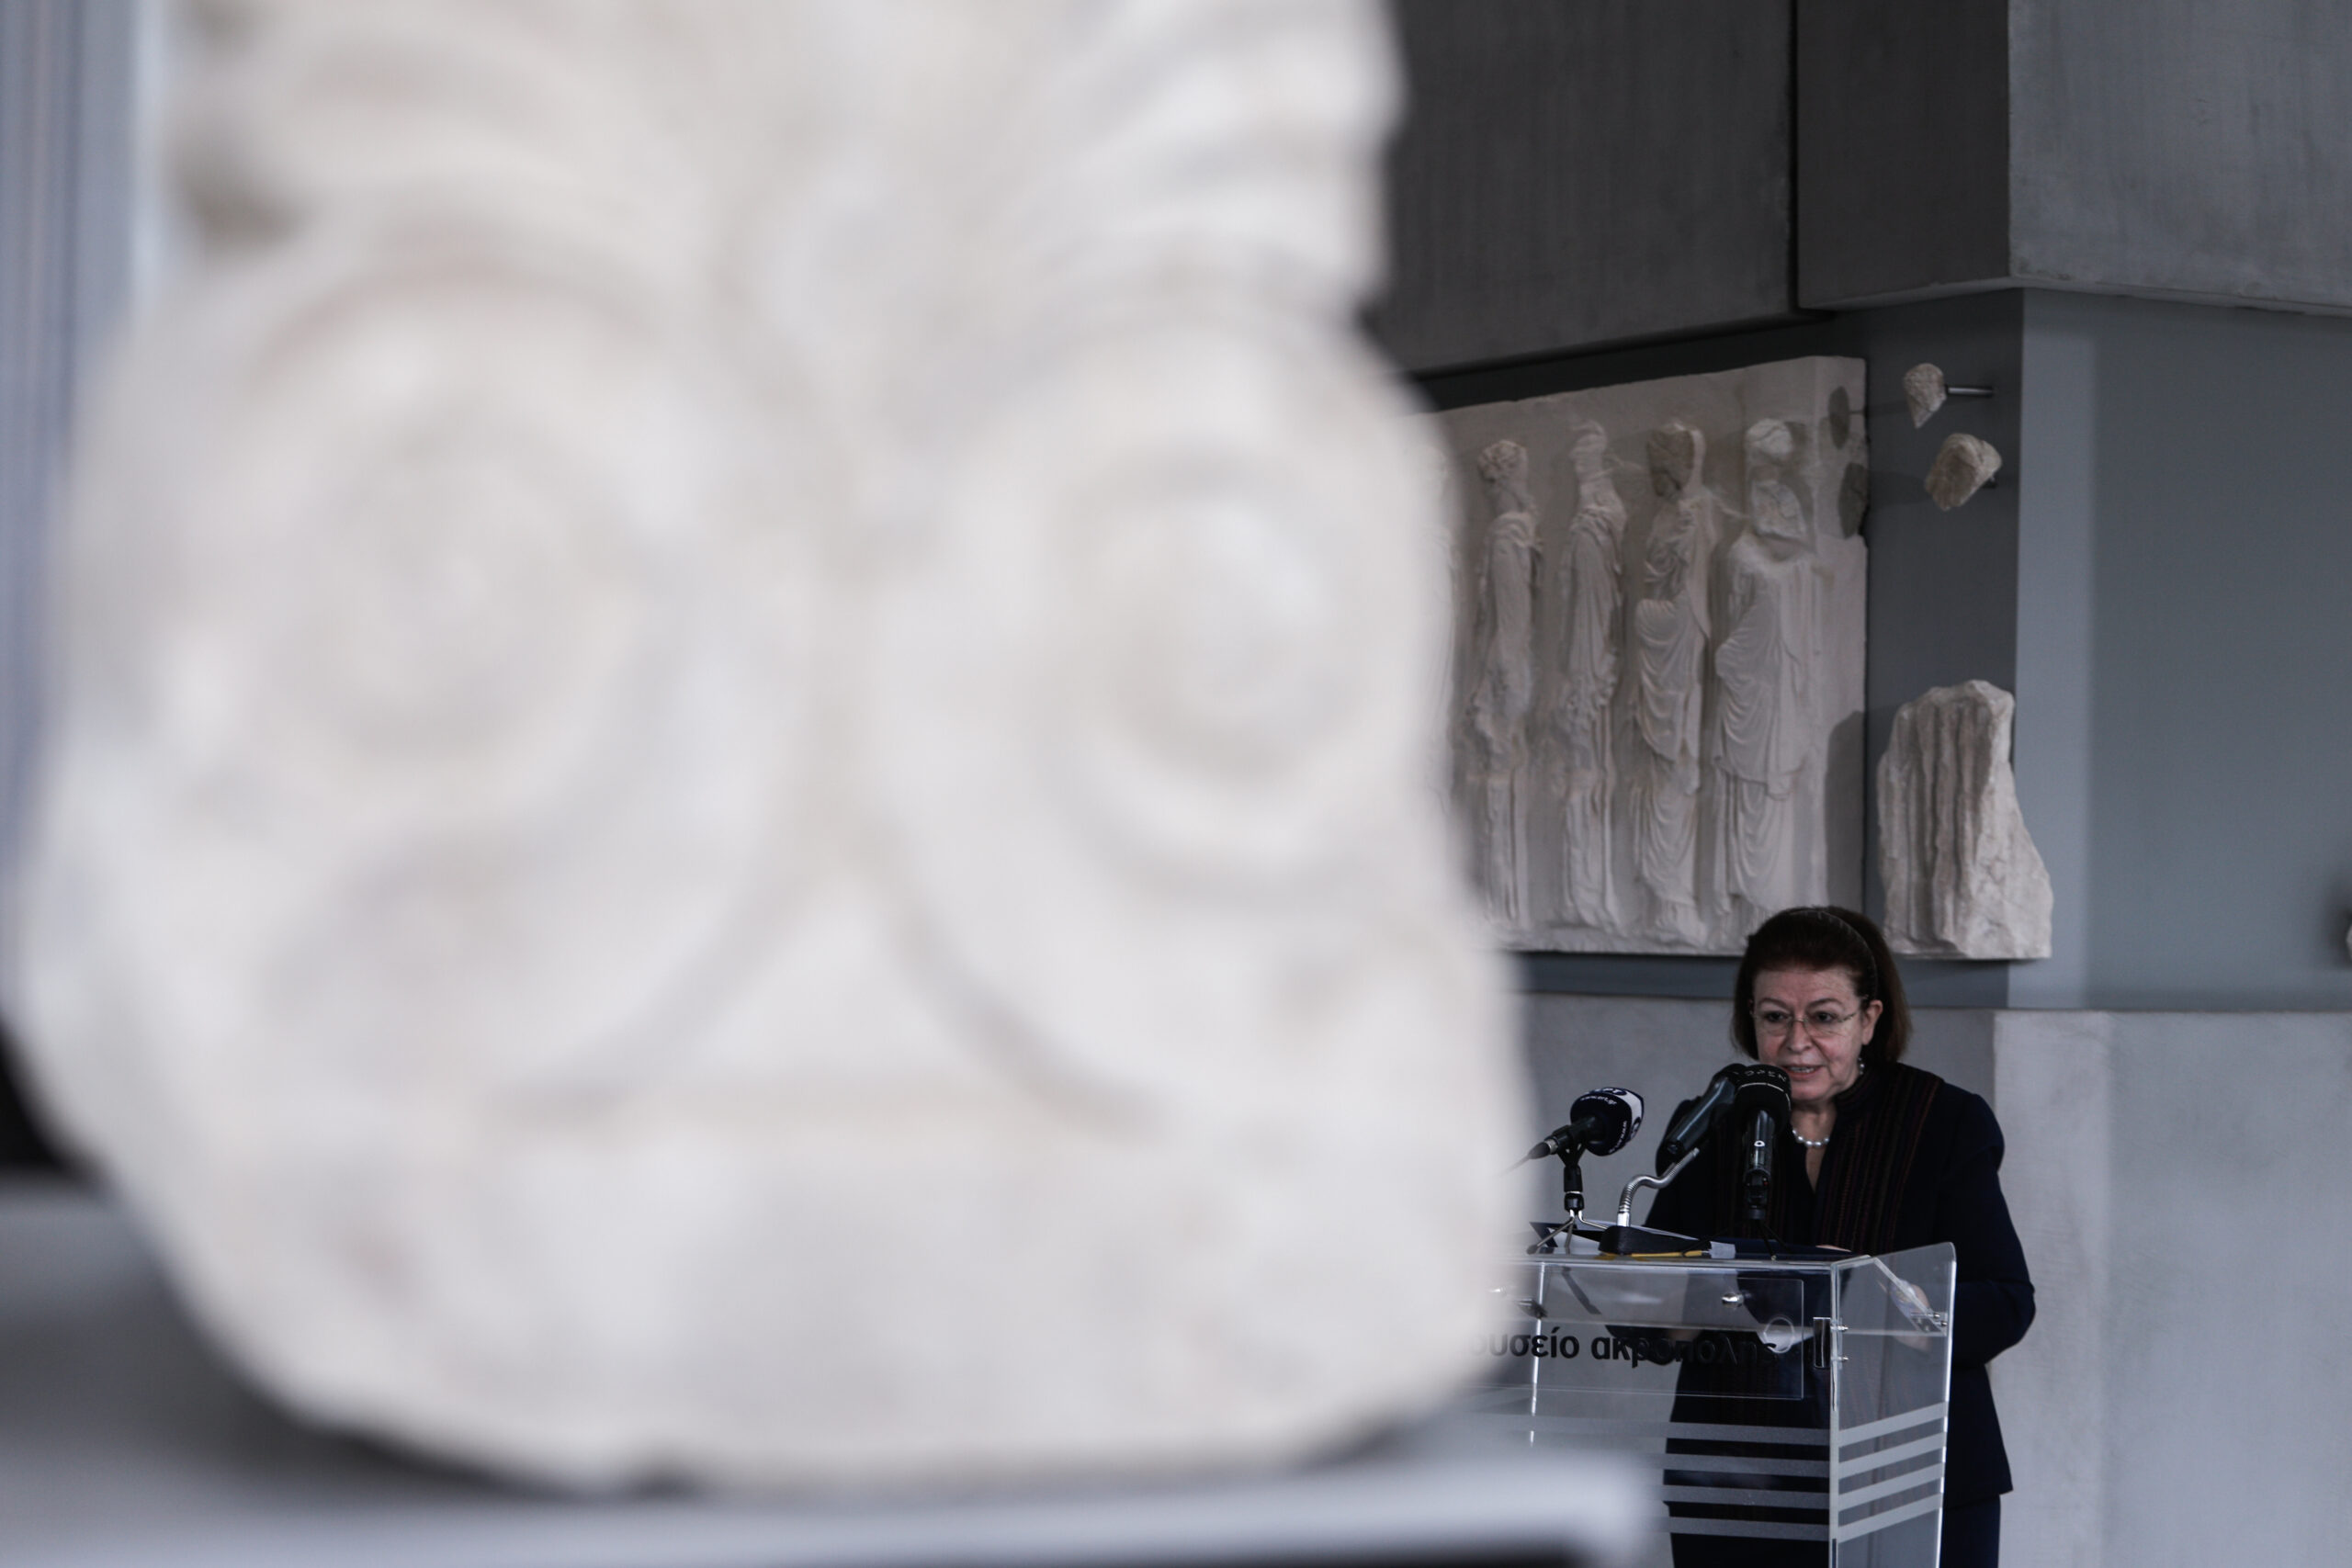 Λ.Μενδώνη: Ήρθε η στιγμή τα μεγάλα μουσεία να ανεξαρτητοποιηθούν από τον σφιχτό εναγκαλισμό του Δημοσίου